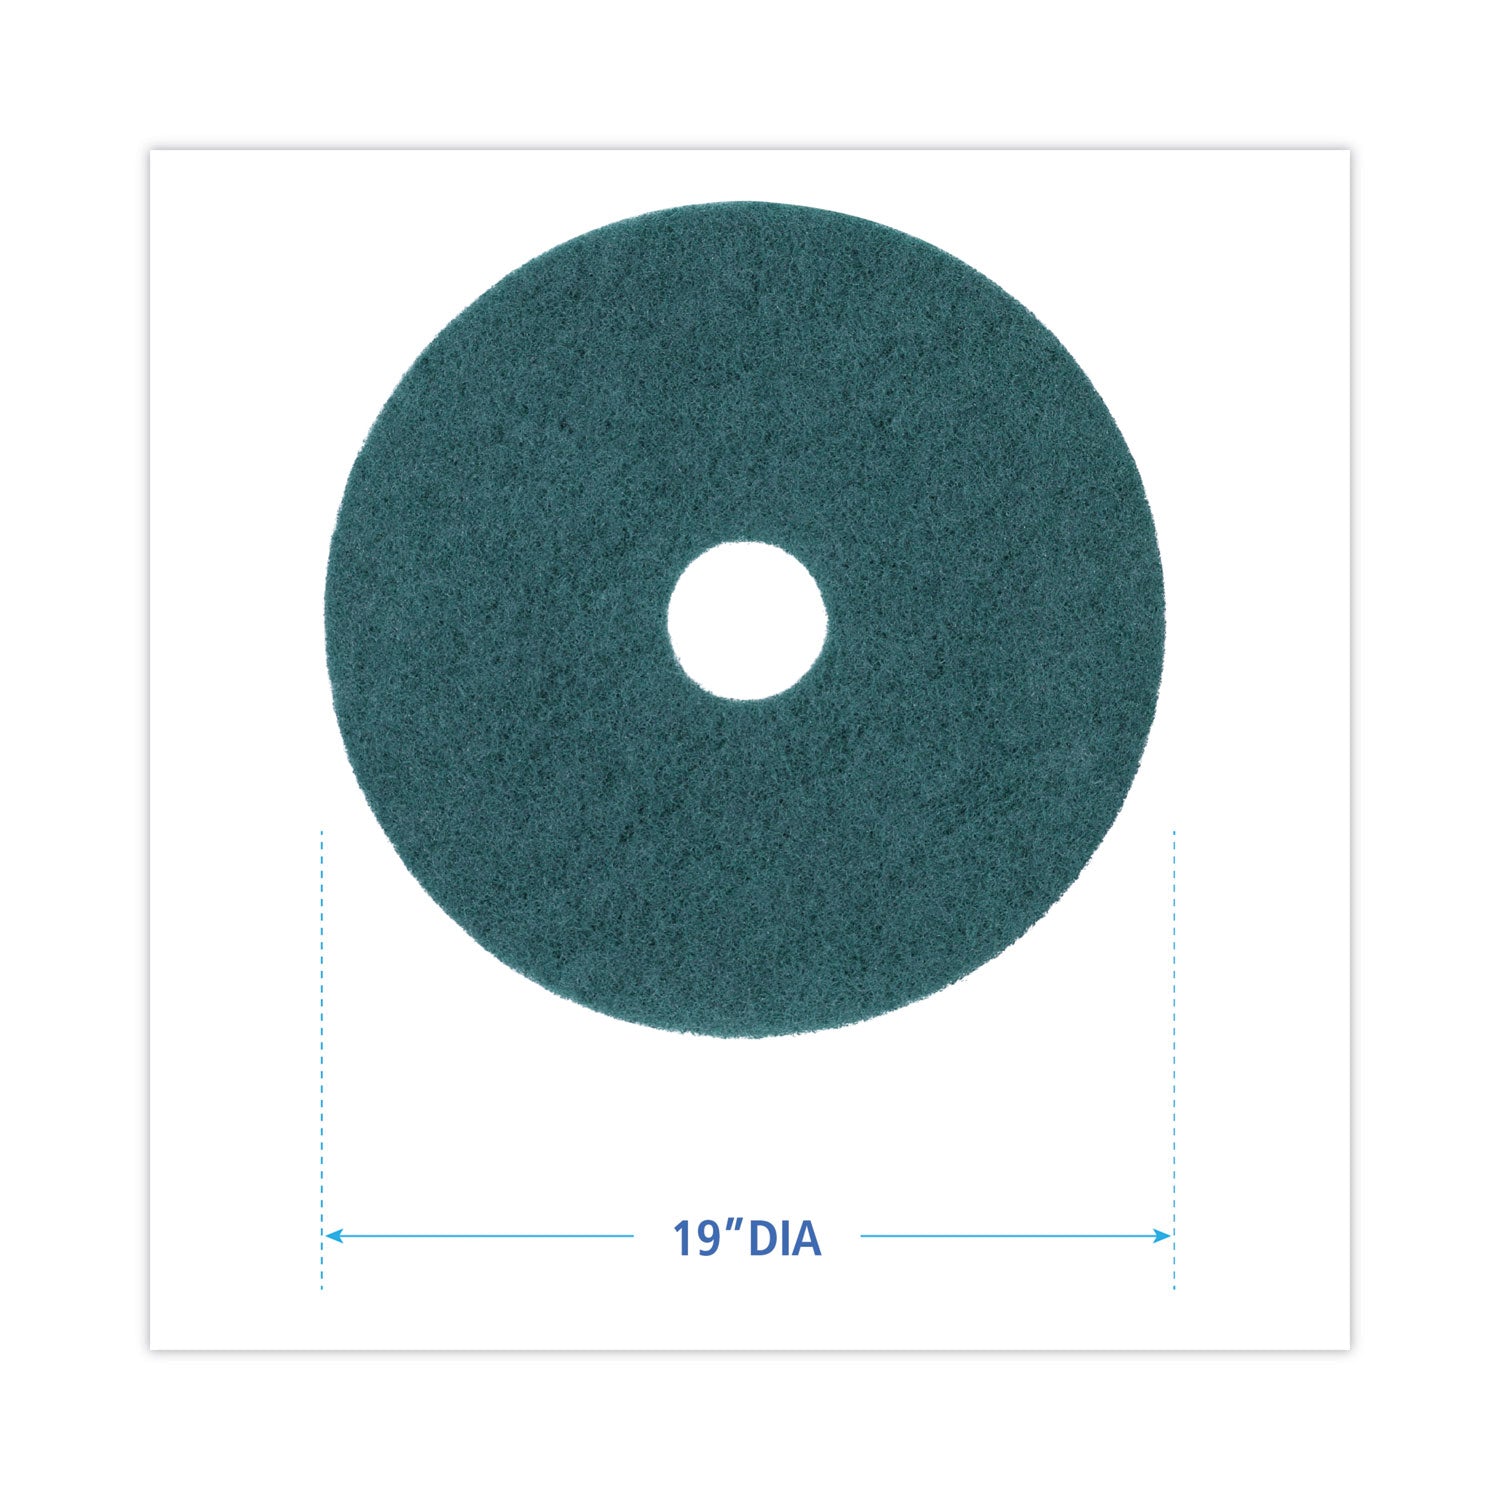 heavy-duty-scrubbing-floor-pads-19-diameter-green-5-carton_bwk4019gre - 2